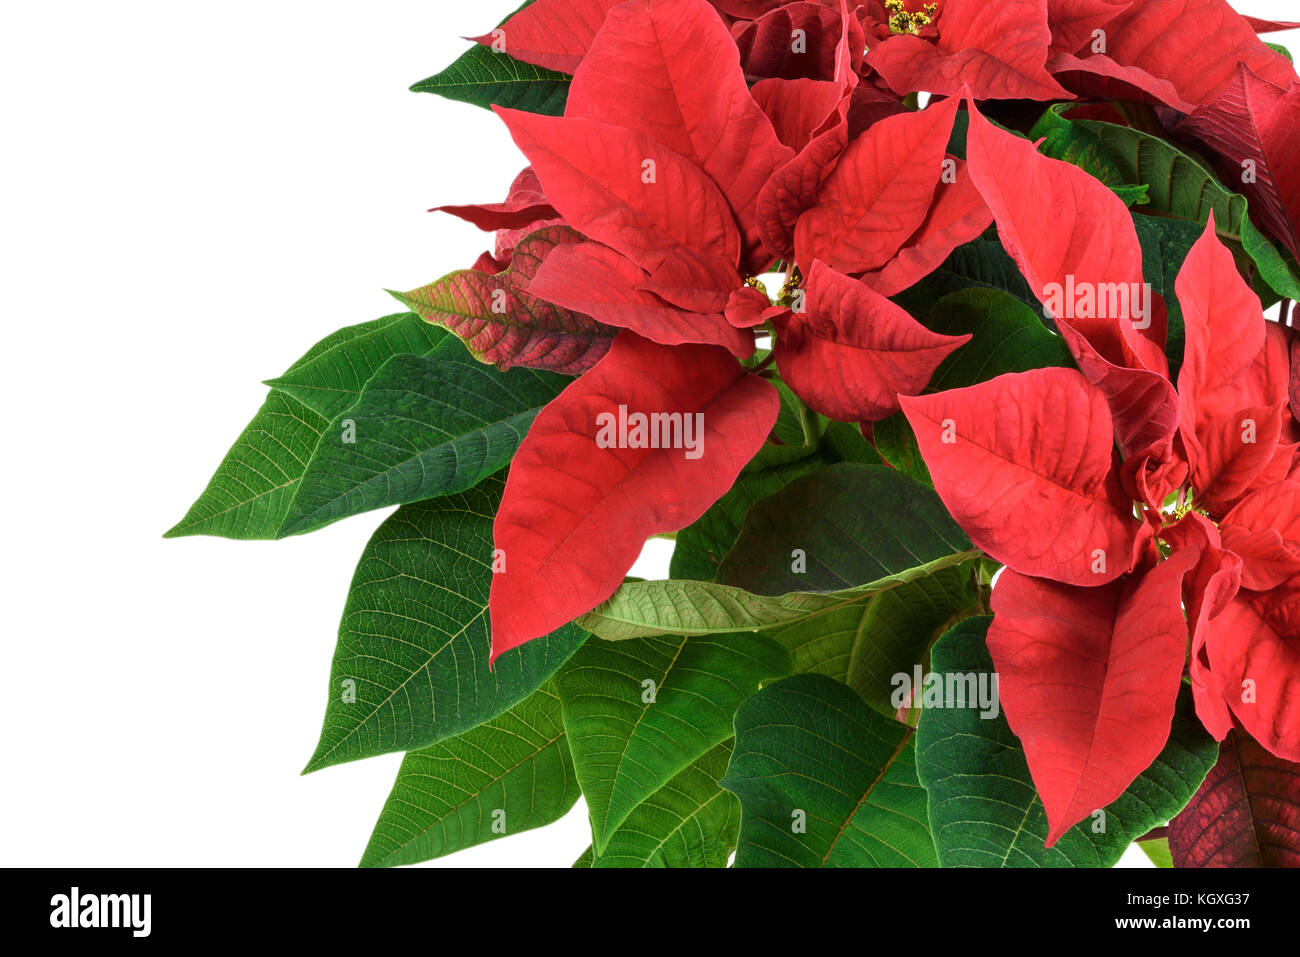 Stella Di Natale Fioritura.Fioritura Di Natale Rosso Fiore Poinsettia In Close Up Isolato Su Uno Sfondo Bianco Vista Dall Alto Foto Stock Alamy